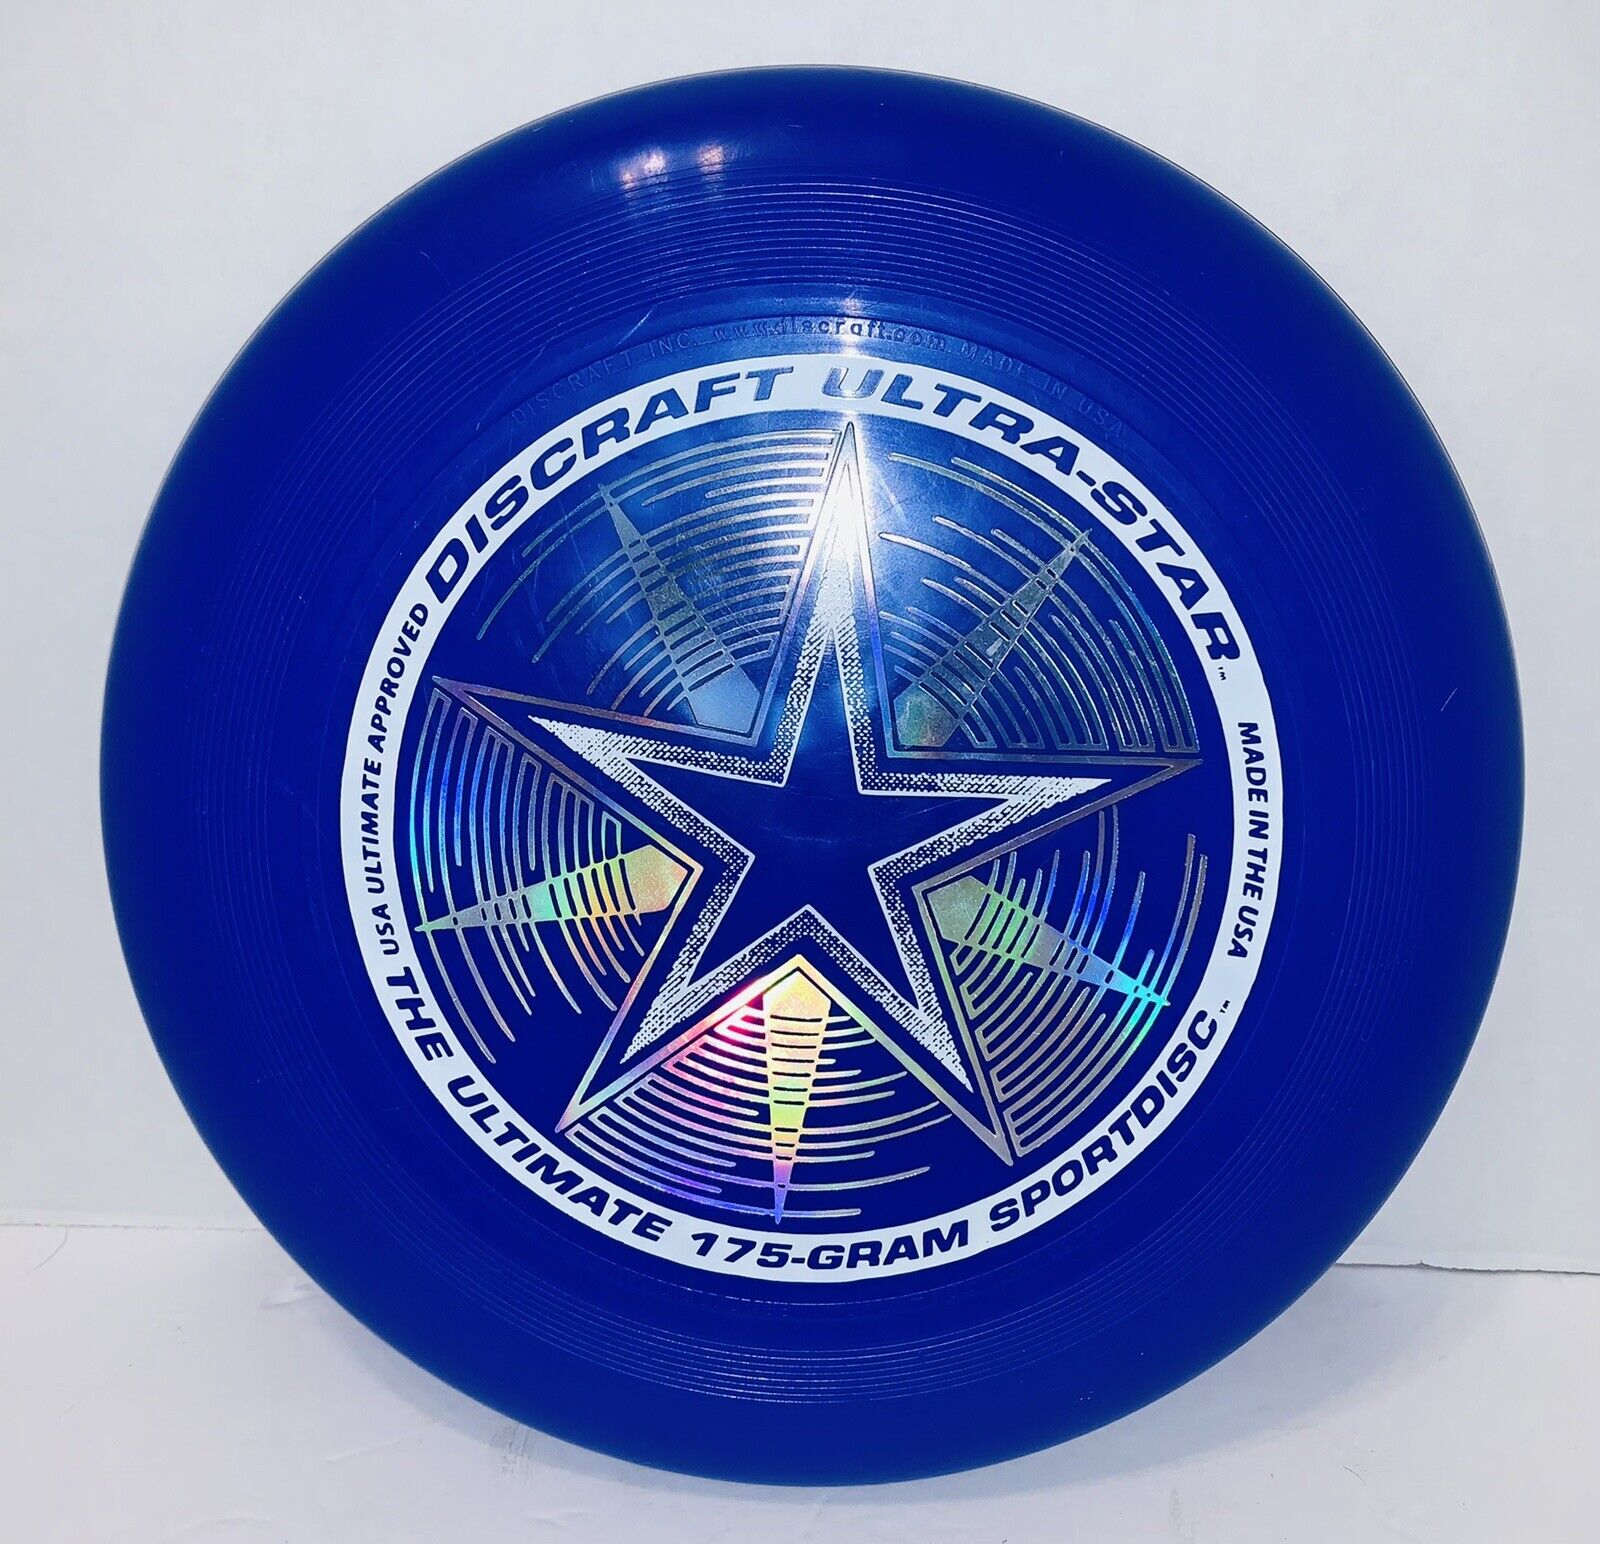 Discraft 175 Gram Ultra Star Sport Disc (Blue)